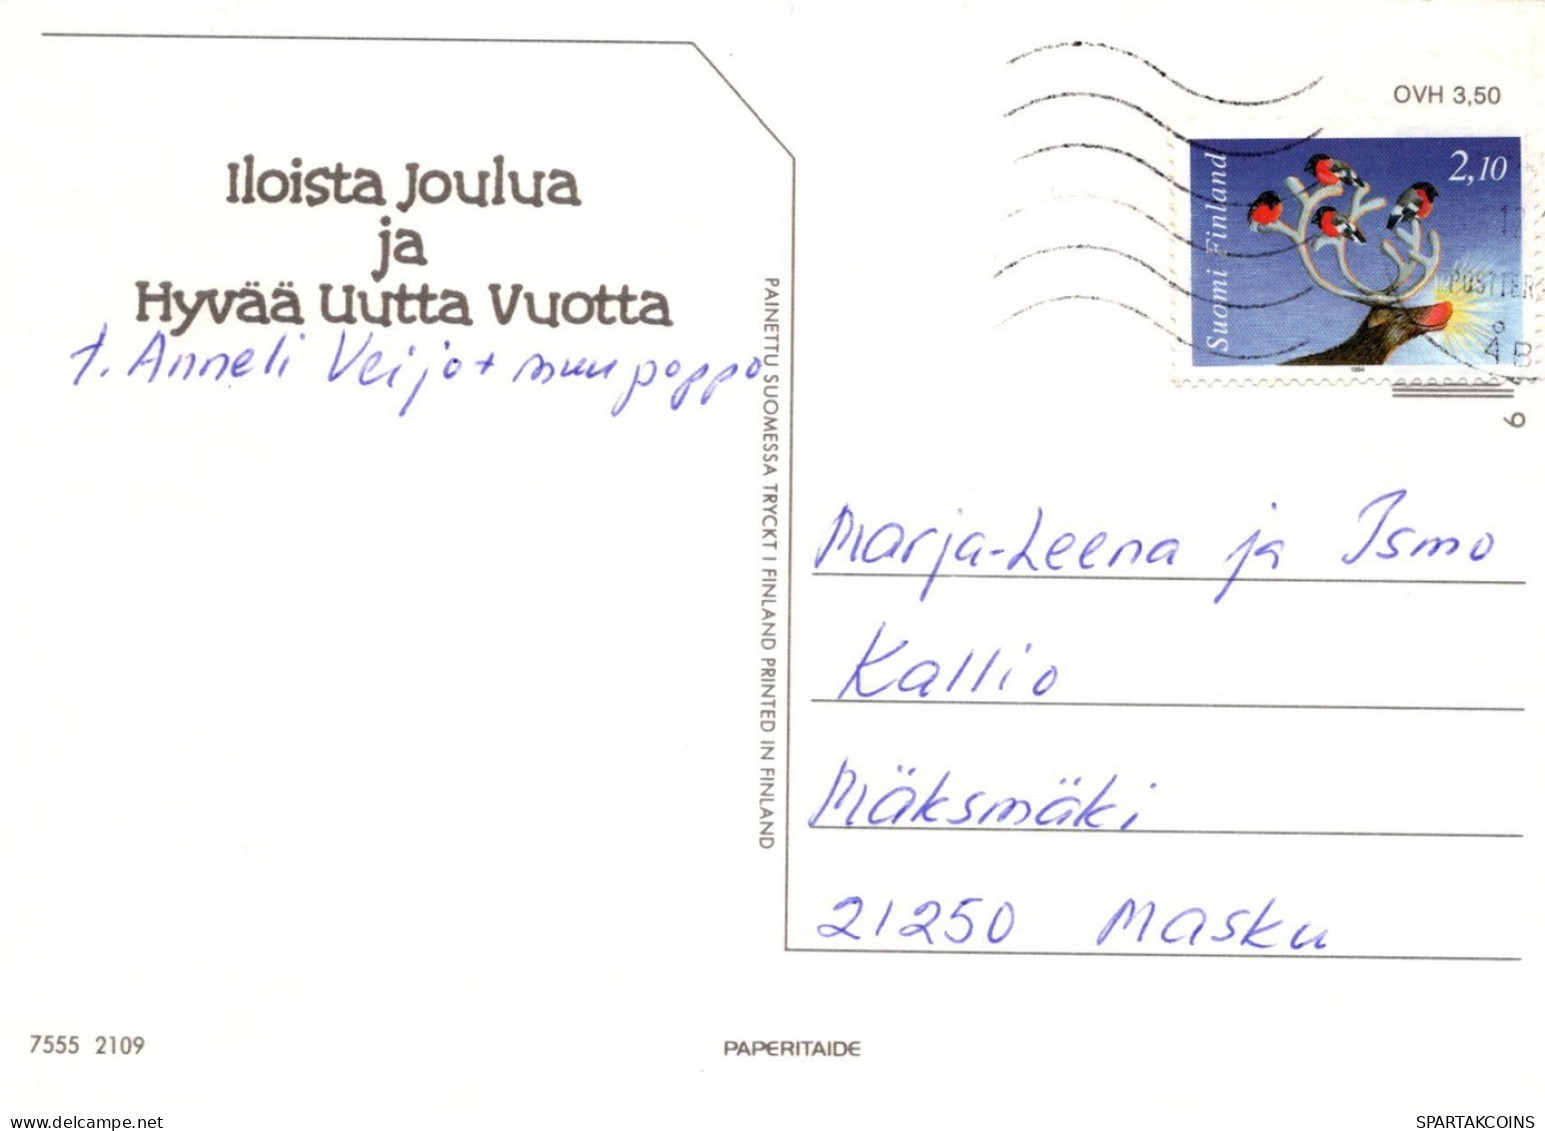 WEIHNACHTSMANN SANTA CLAUS WEIHNACHTSFERIEN Vintage Postkarte CPSM #PAJ556.A - Santa Claus